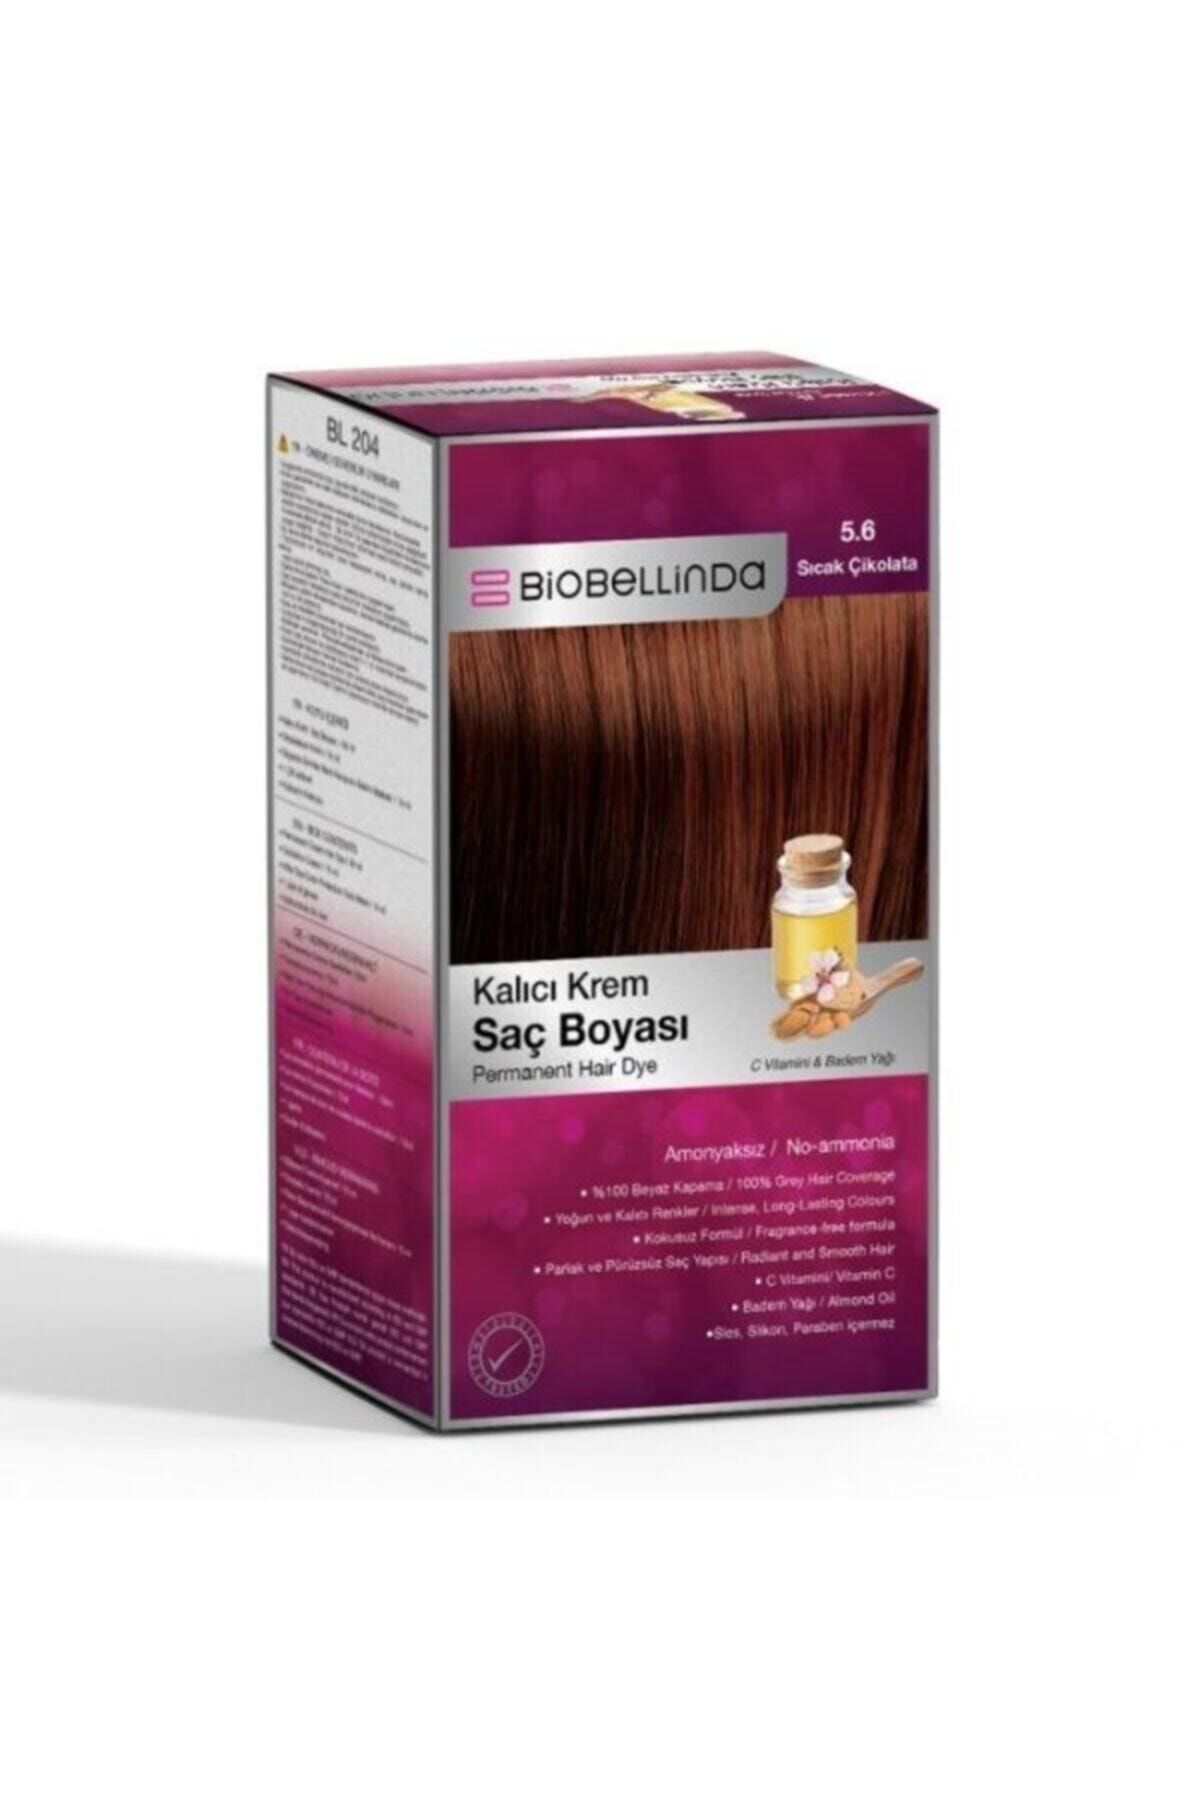 BioBellinda Saç Boyası 5.6 Sıcak Çikolata